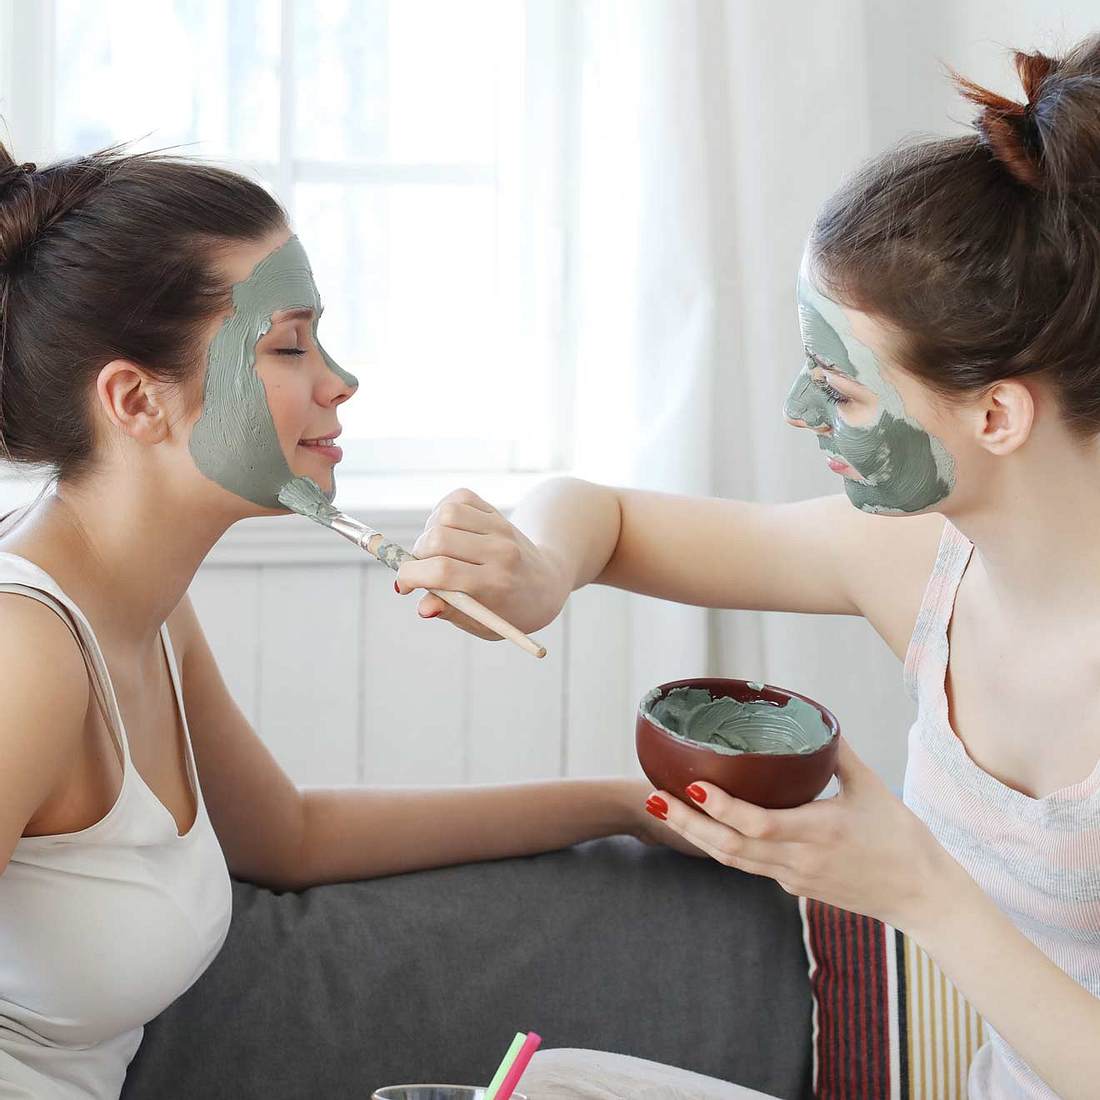 Tolle Idee für einen Beauty-Tag mit deiner besten Freundin: Gesichtsmaske